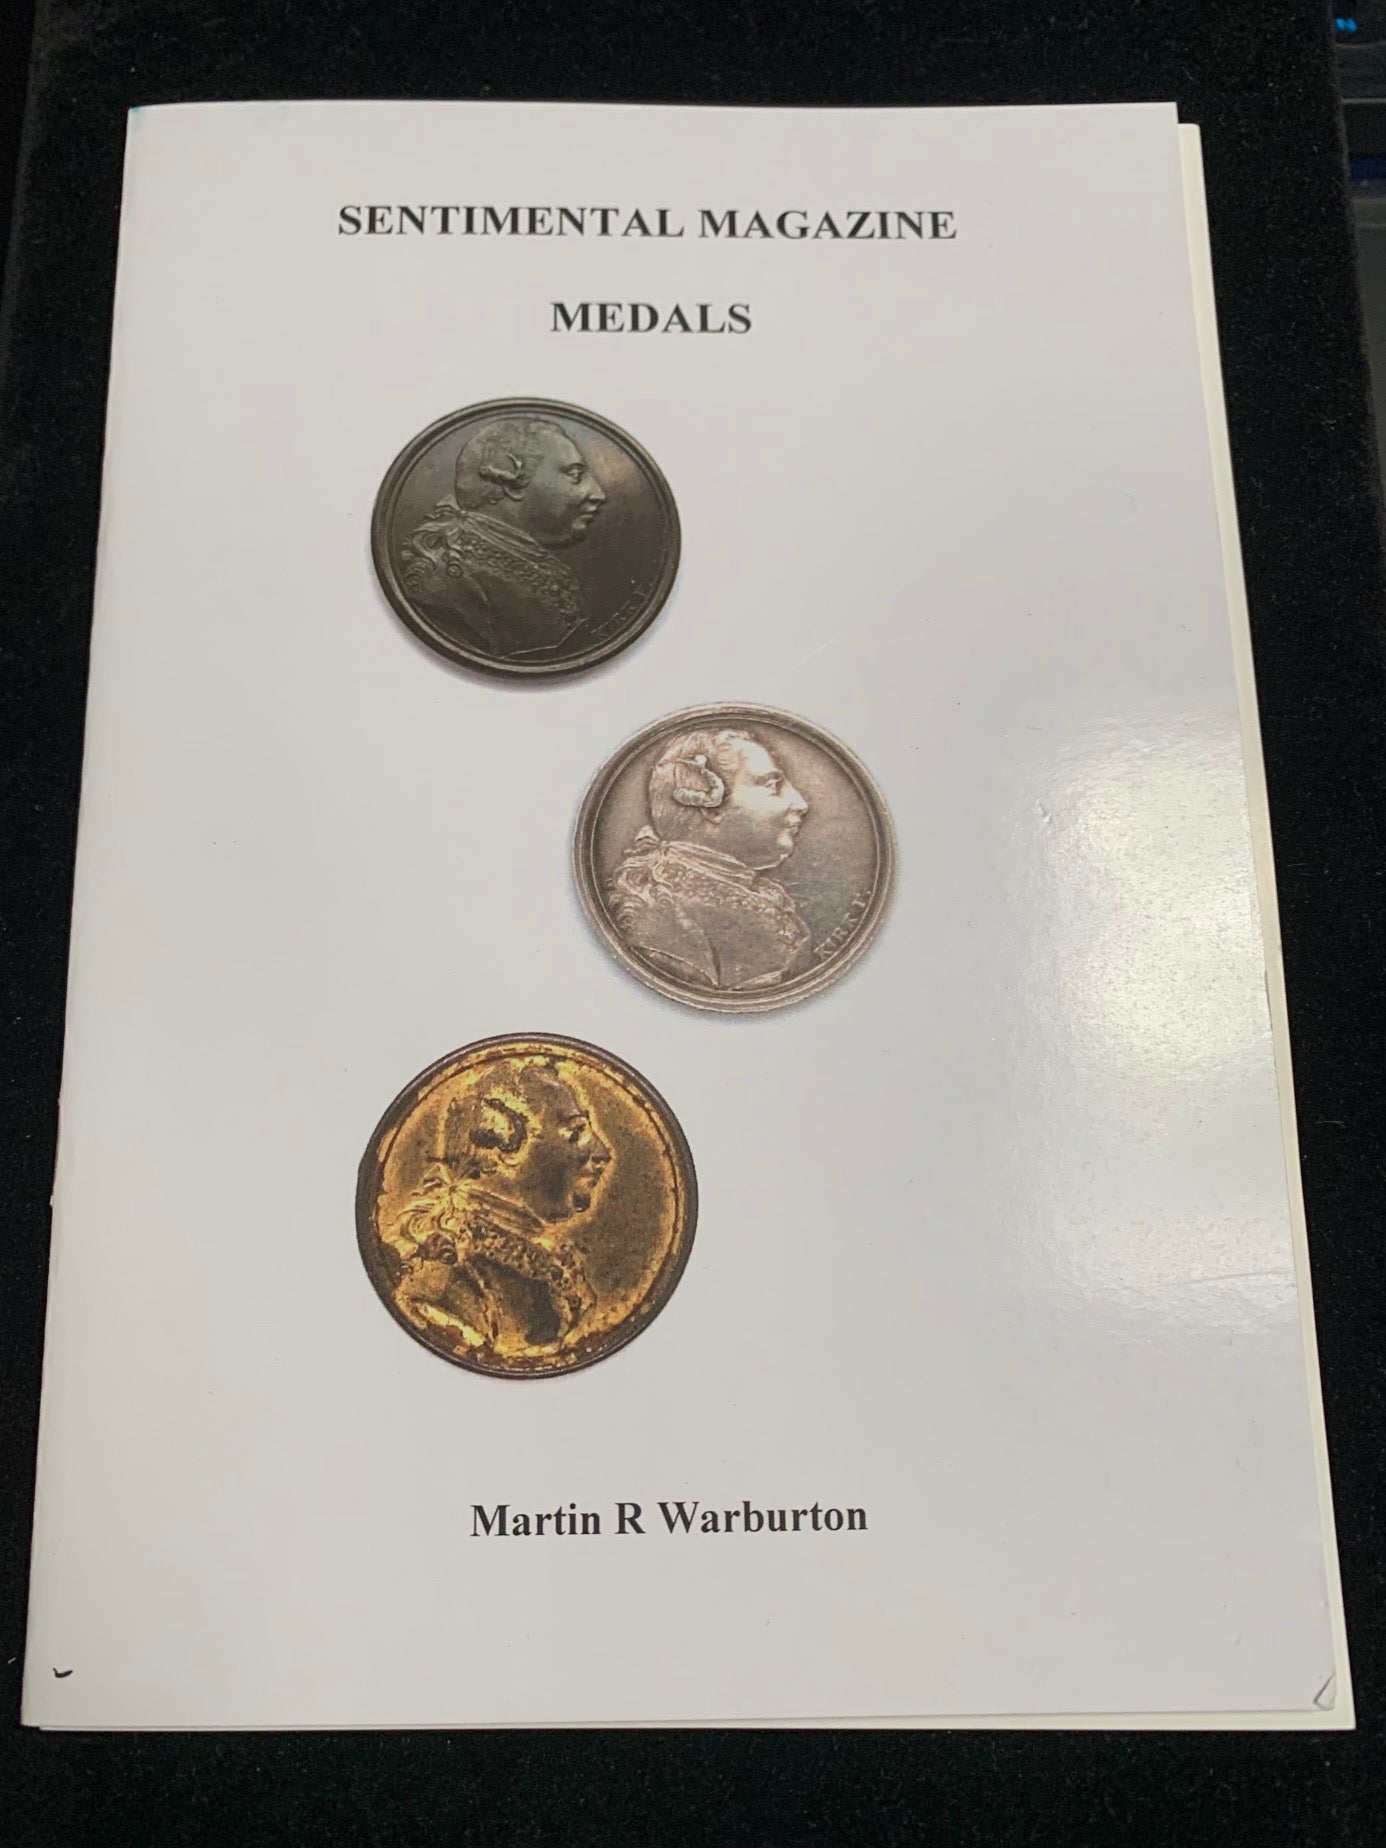 Sentimental Magazine Medals by Martin R. Warburton